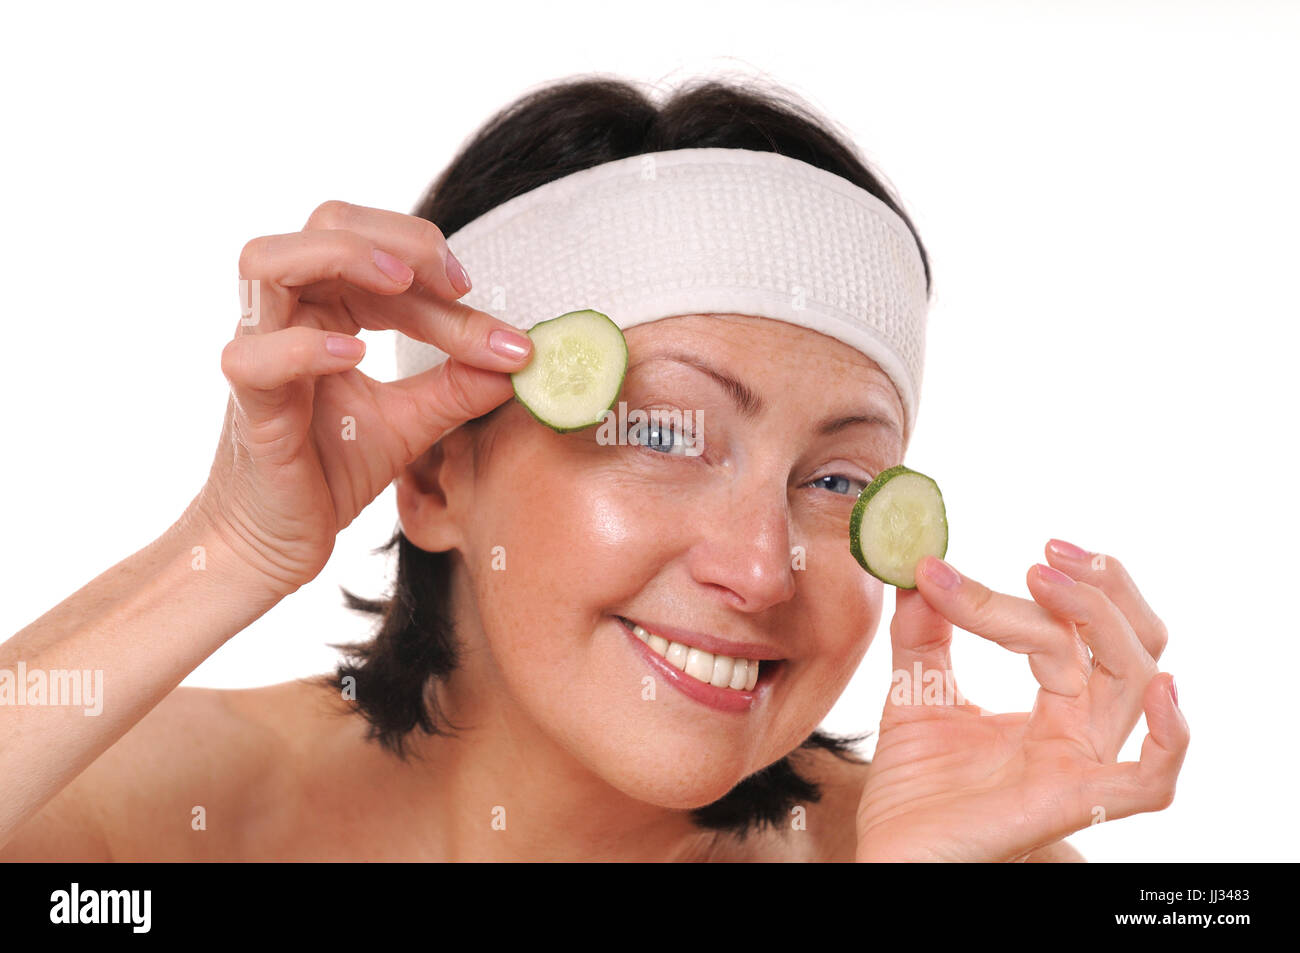 Allegra donna matura tenendo i pezzi di cetriolo davanti agli occhi. Natural spa trattamento. Isolato su sfondo bianco Foto Stock